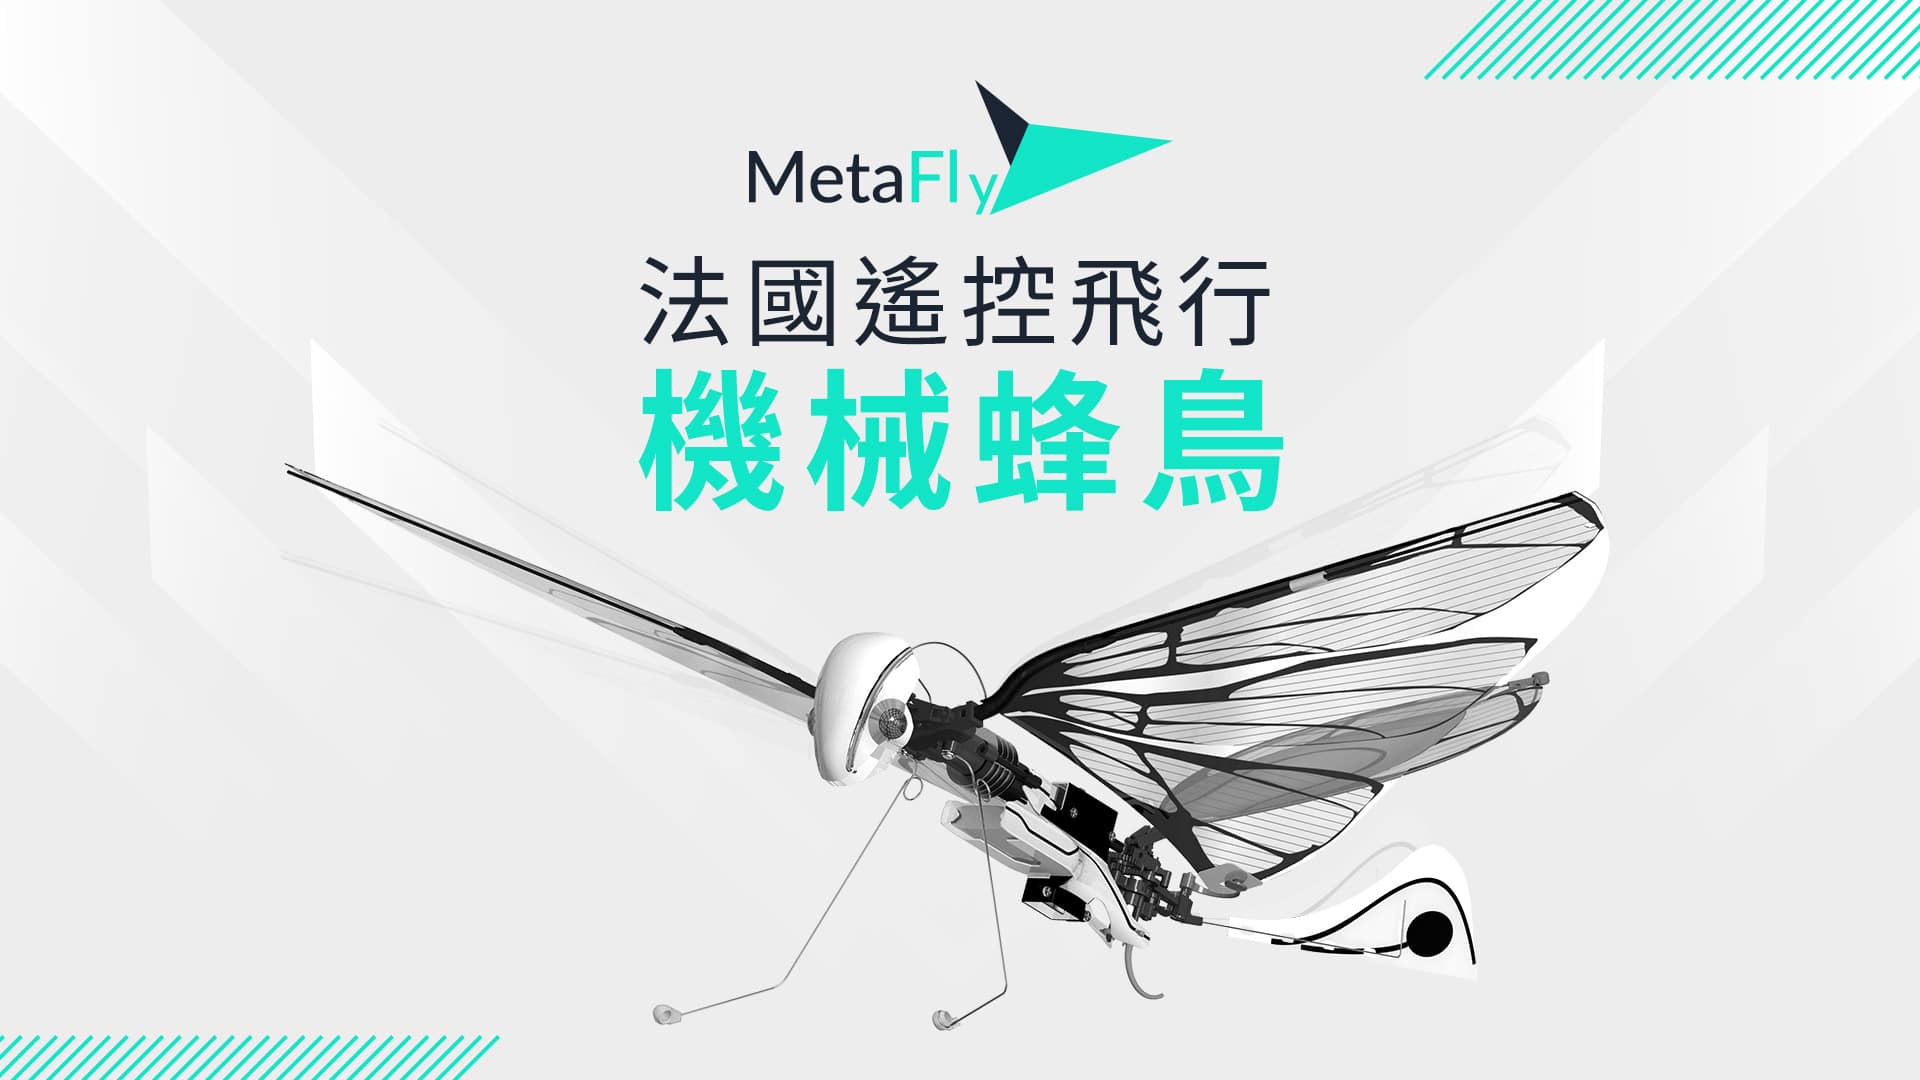 超輕巧仿生無人機metafly 機械蜂鳥降落台灣超額募資近3 倍 Dronesplayer